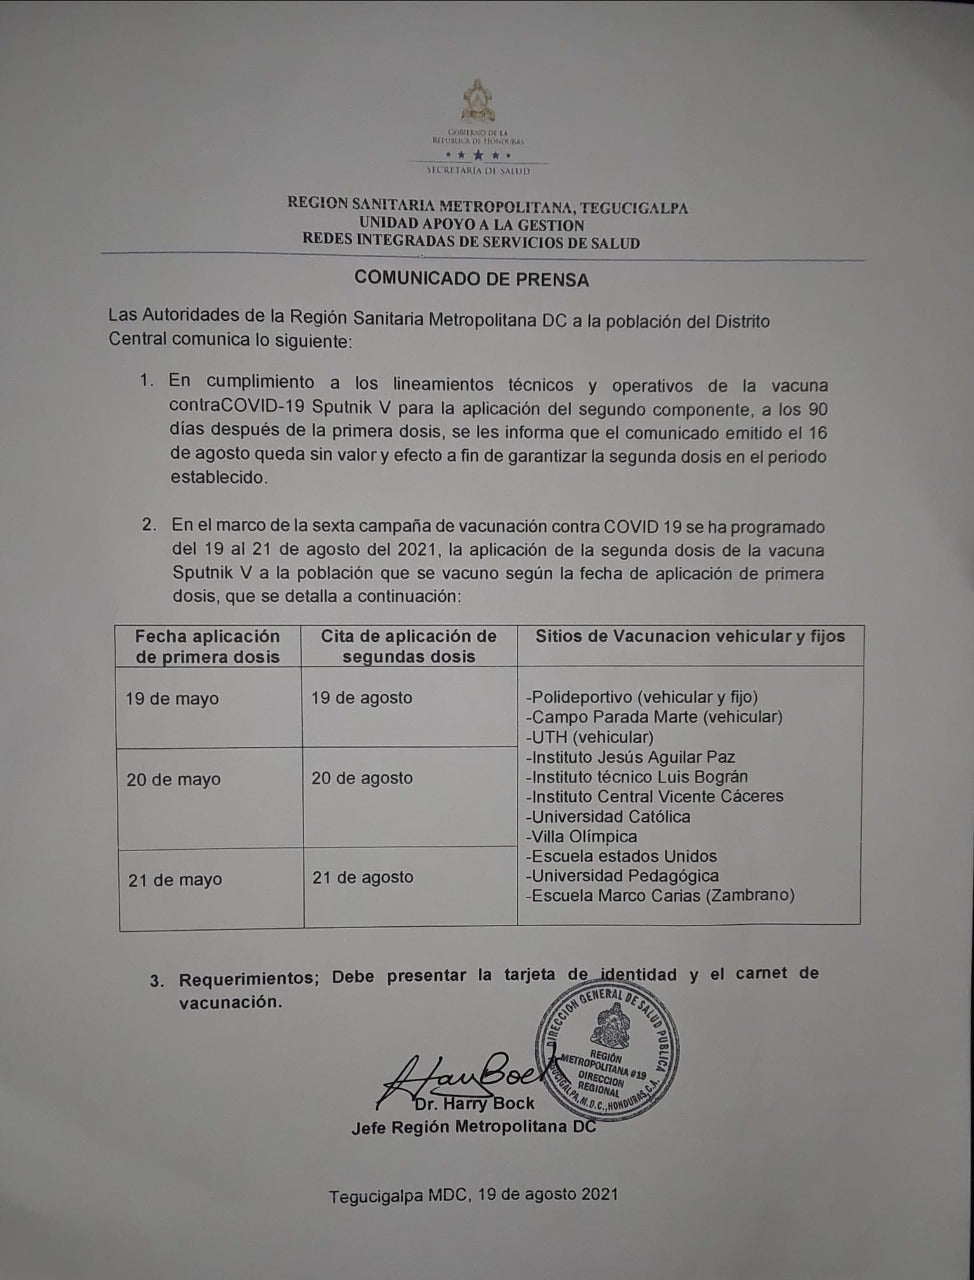 Comunicado emitido por la Región Metropolitana de Salud del Distrito Central.